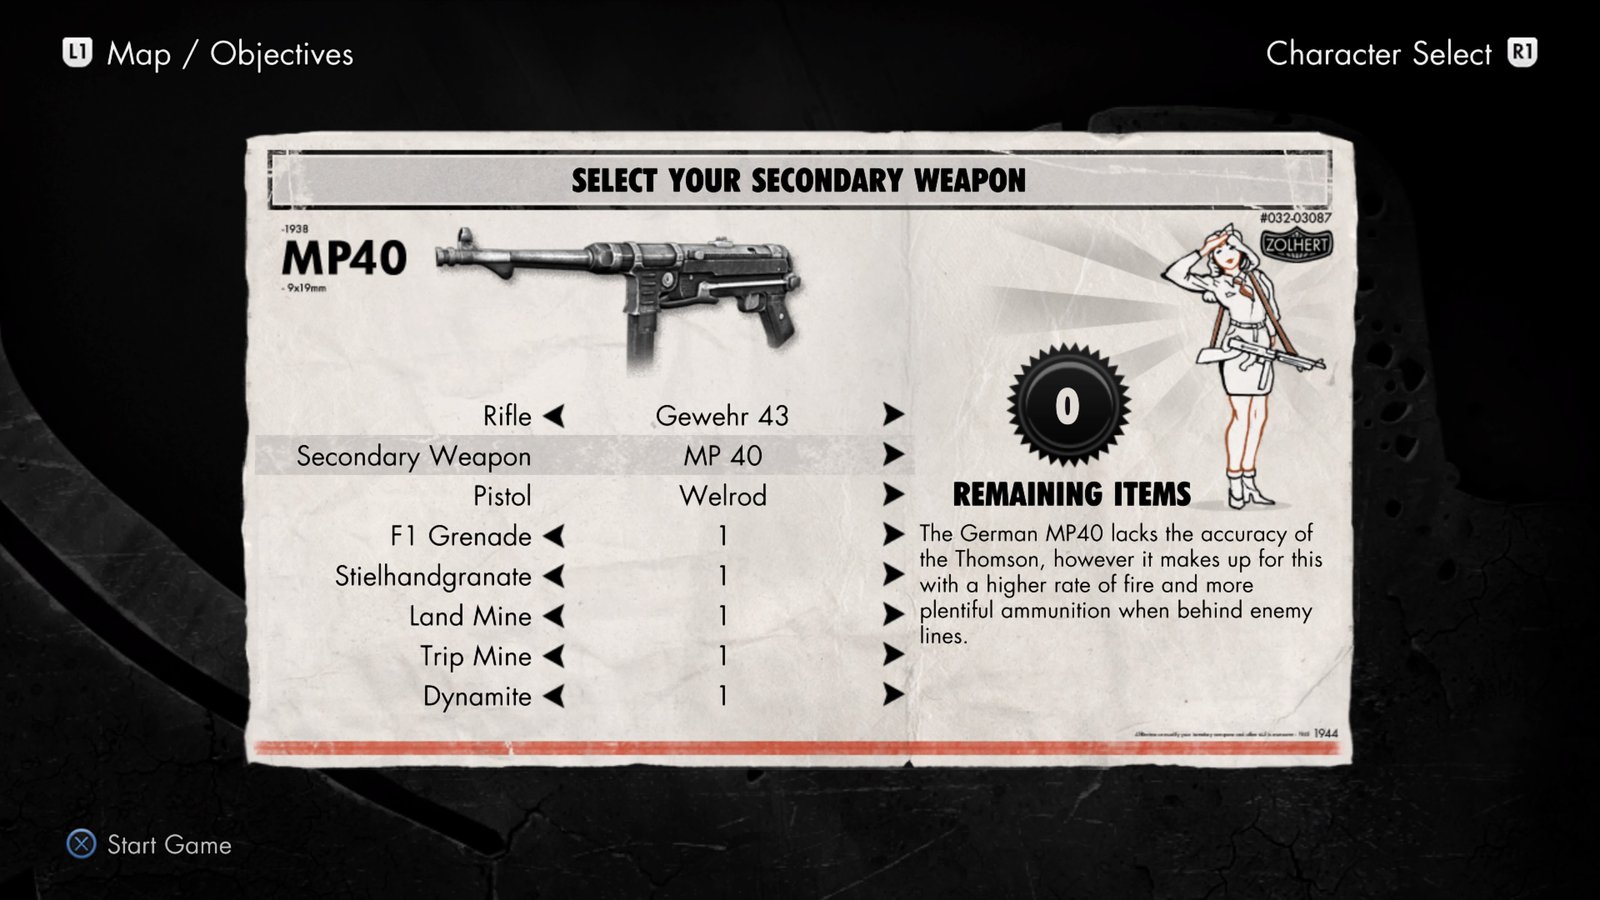 sniper elite v2 weapons unlock